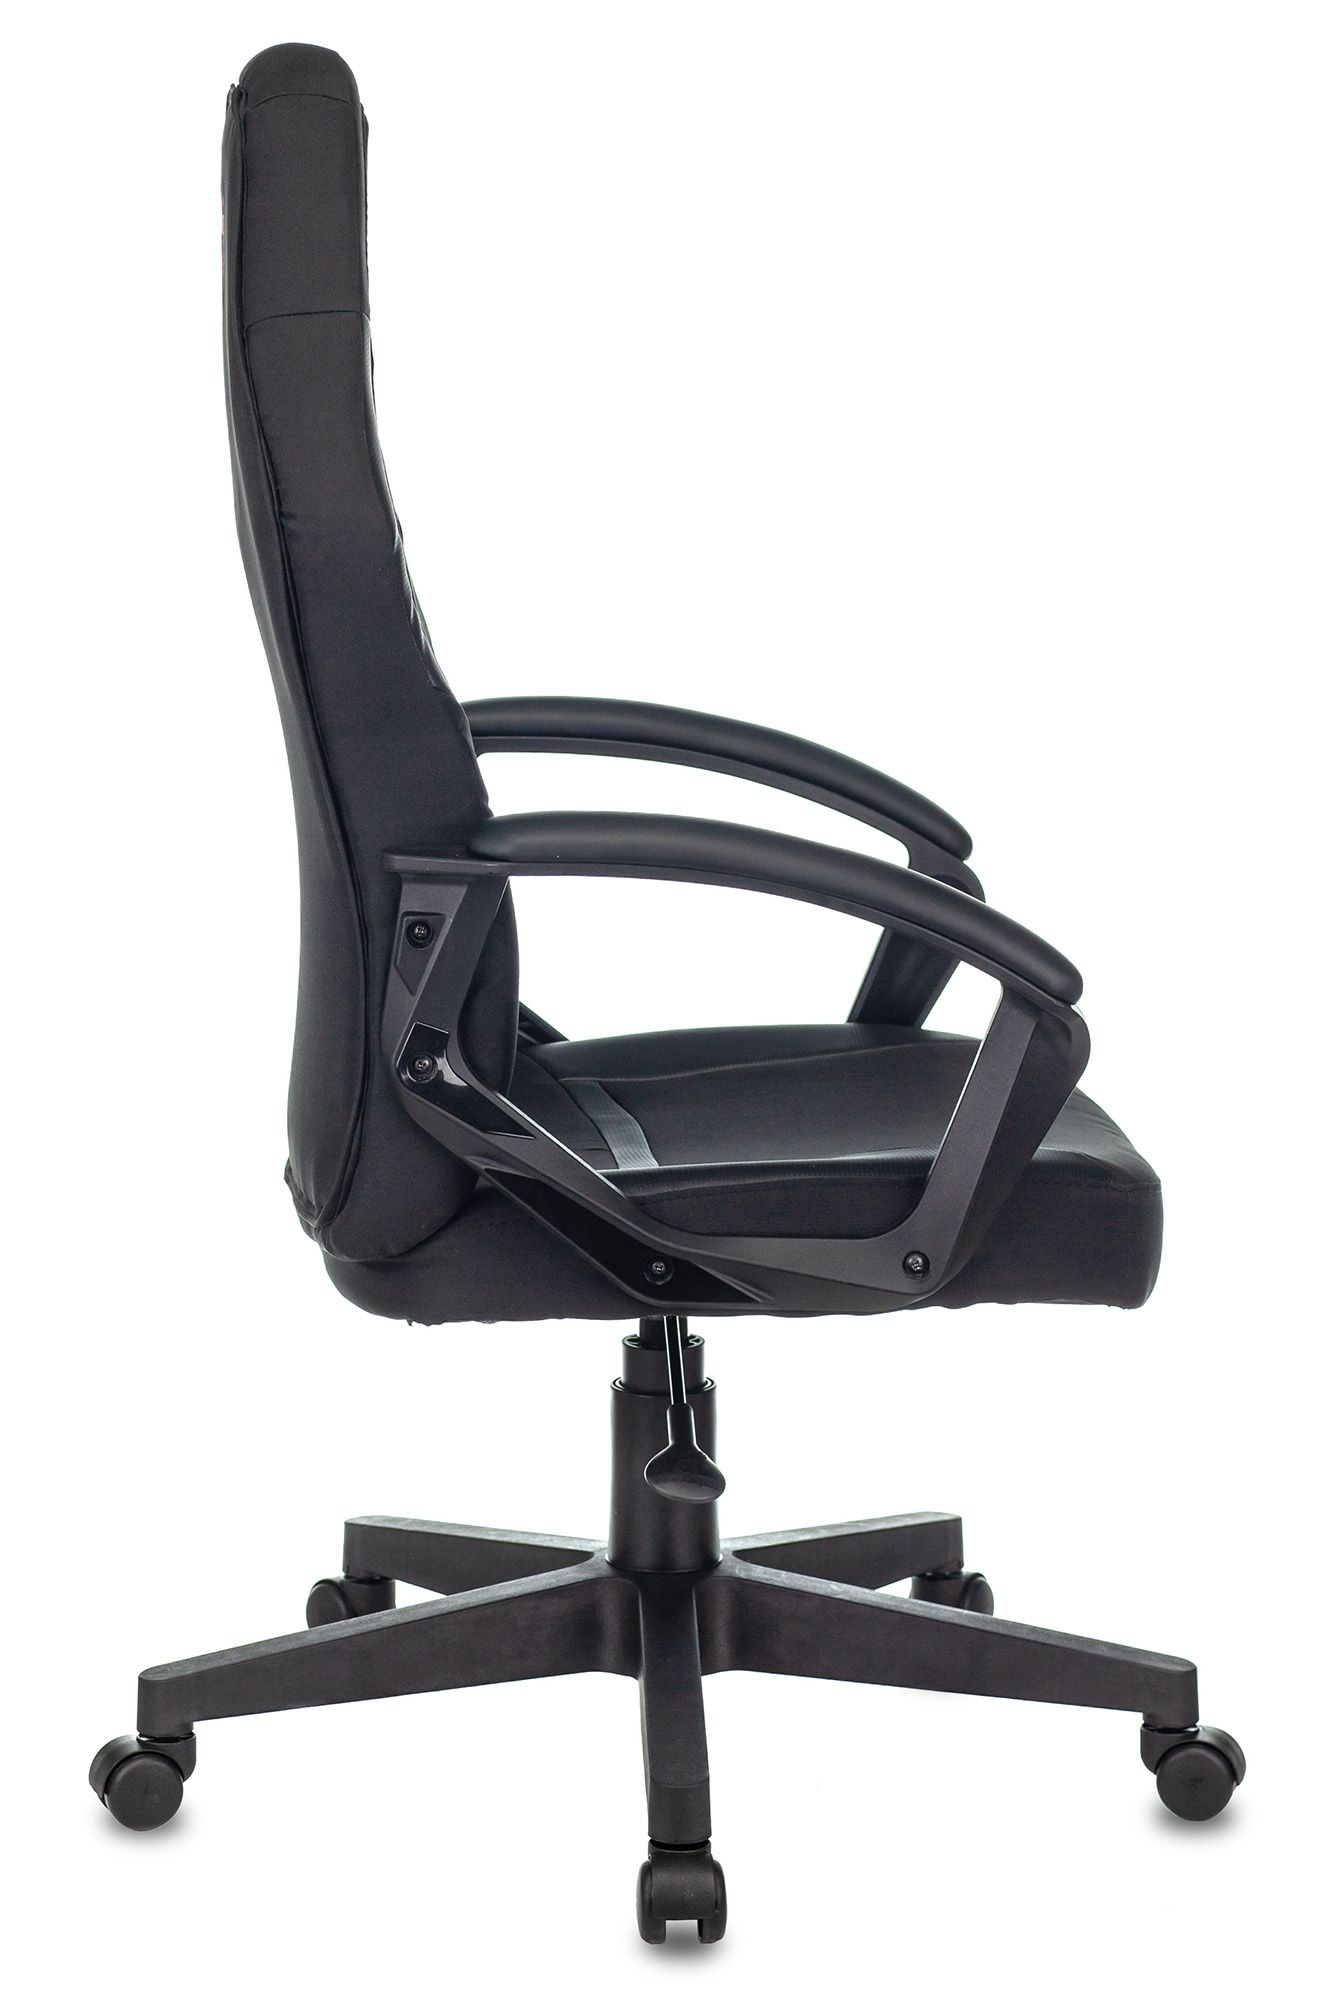 Кресло игровое Zombie 10 черный текстиль/эко.кожа крестовина пластик